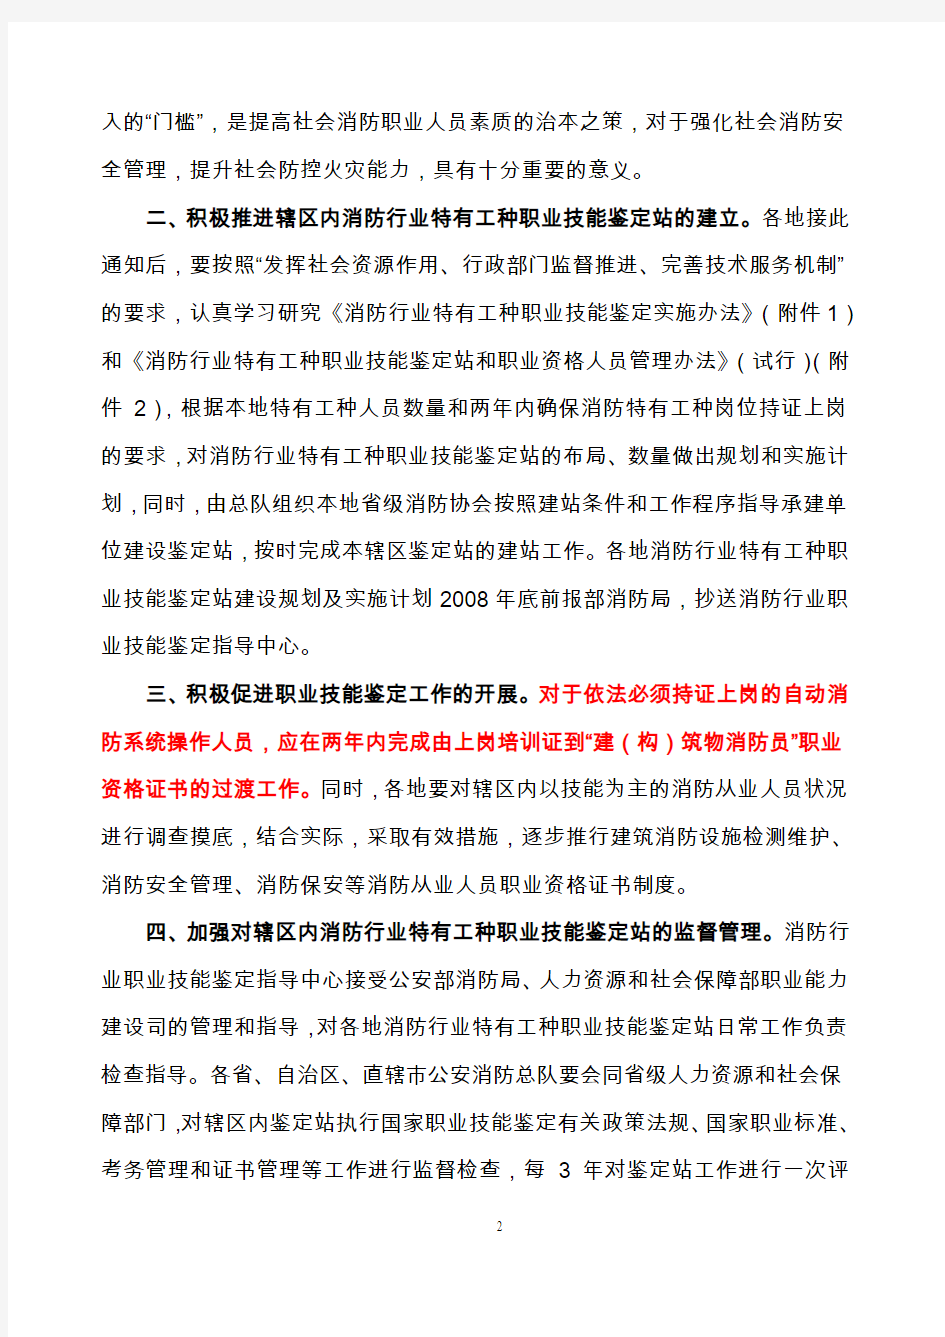 中华人民共和国公安部消防局关于进一步推进消防行业特有工种职业技能鉴定工作的通知公消[ 2008 ] 556号